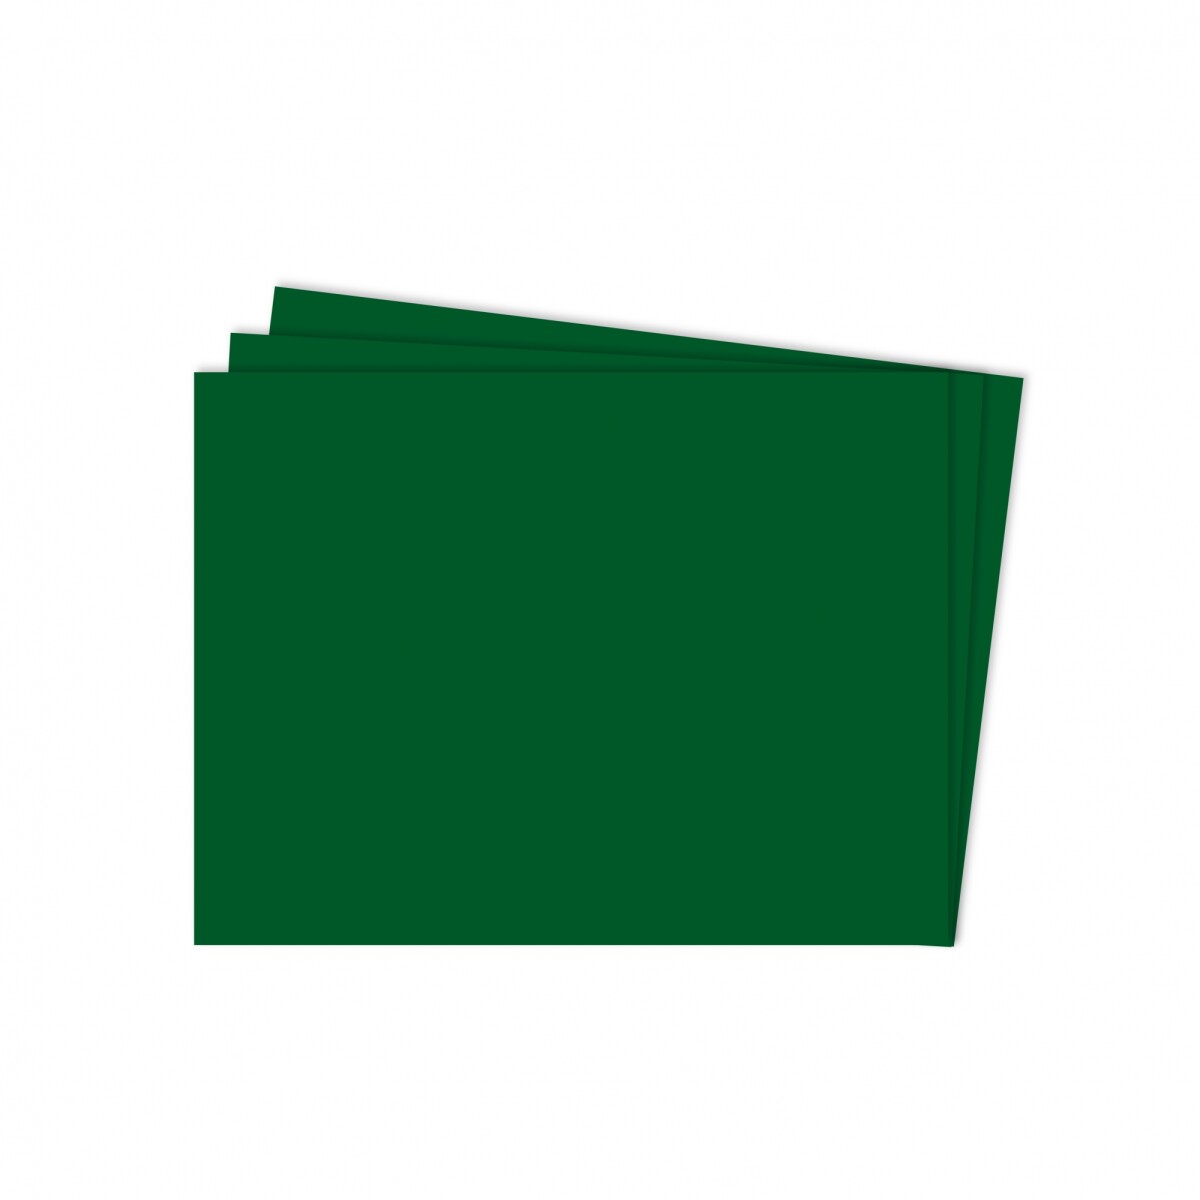 Cartulina 148g 50x70cm Funda x100 unidades - Verde Oscuro 